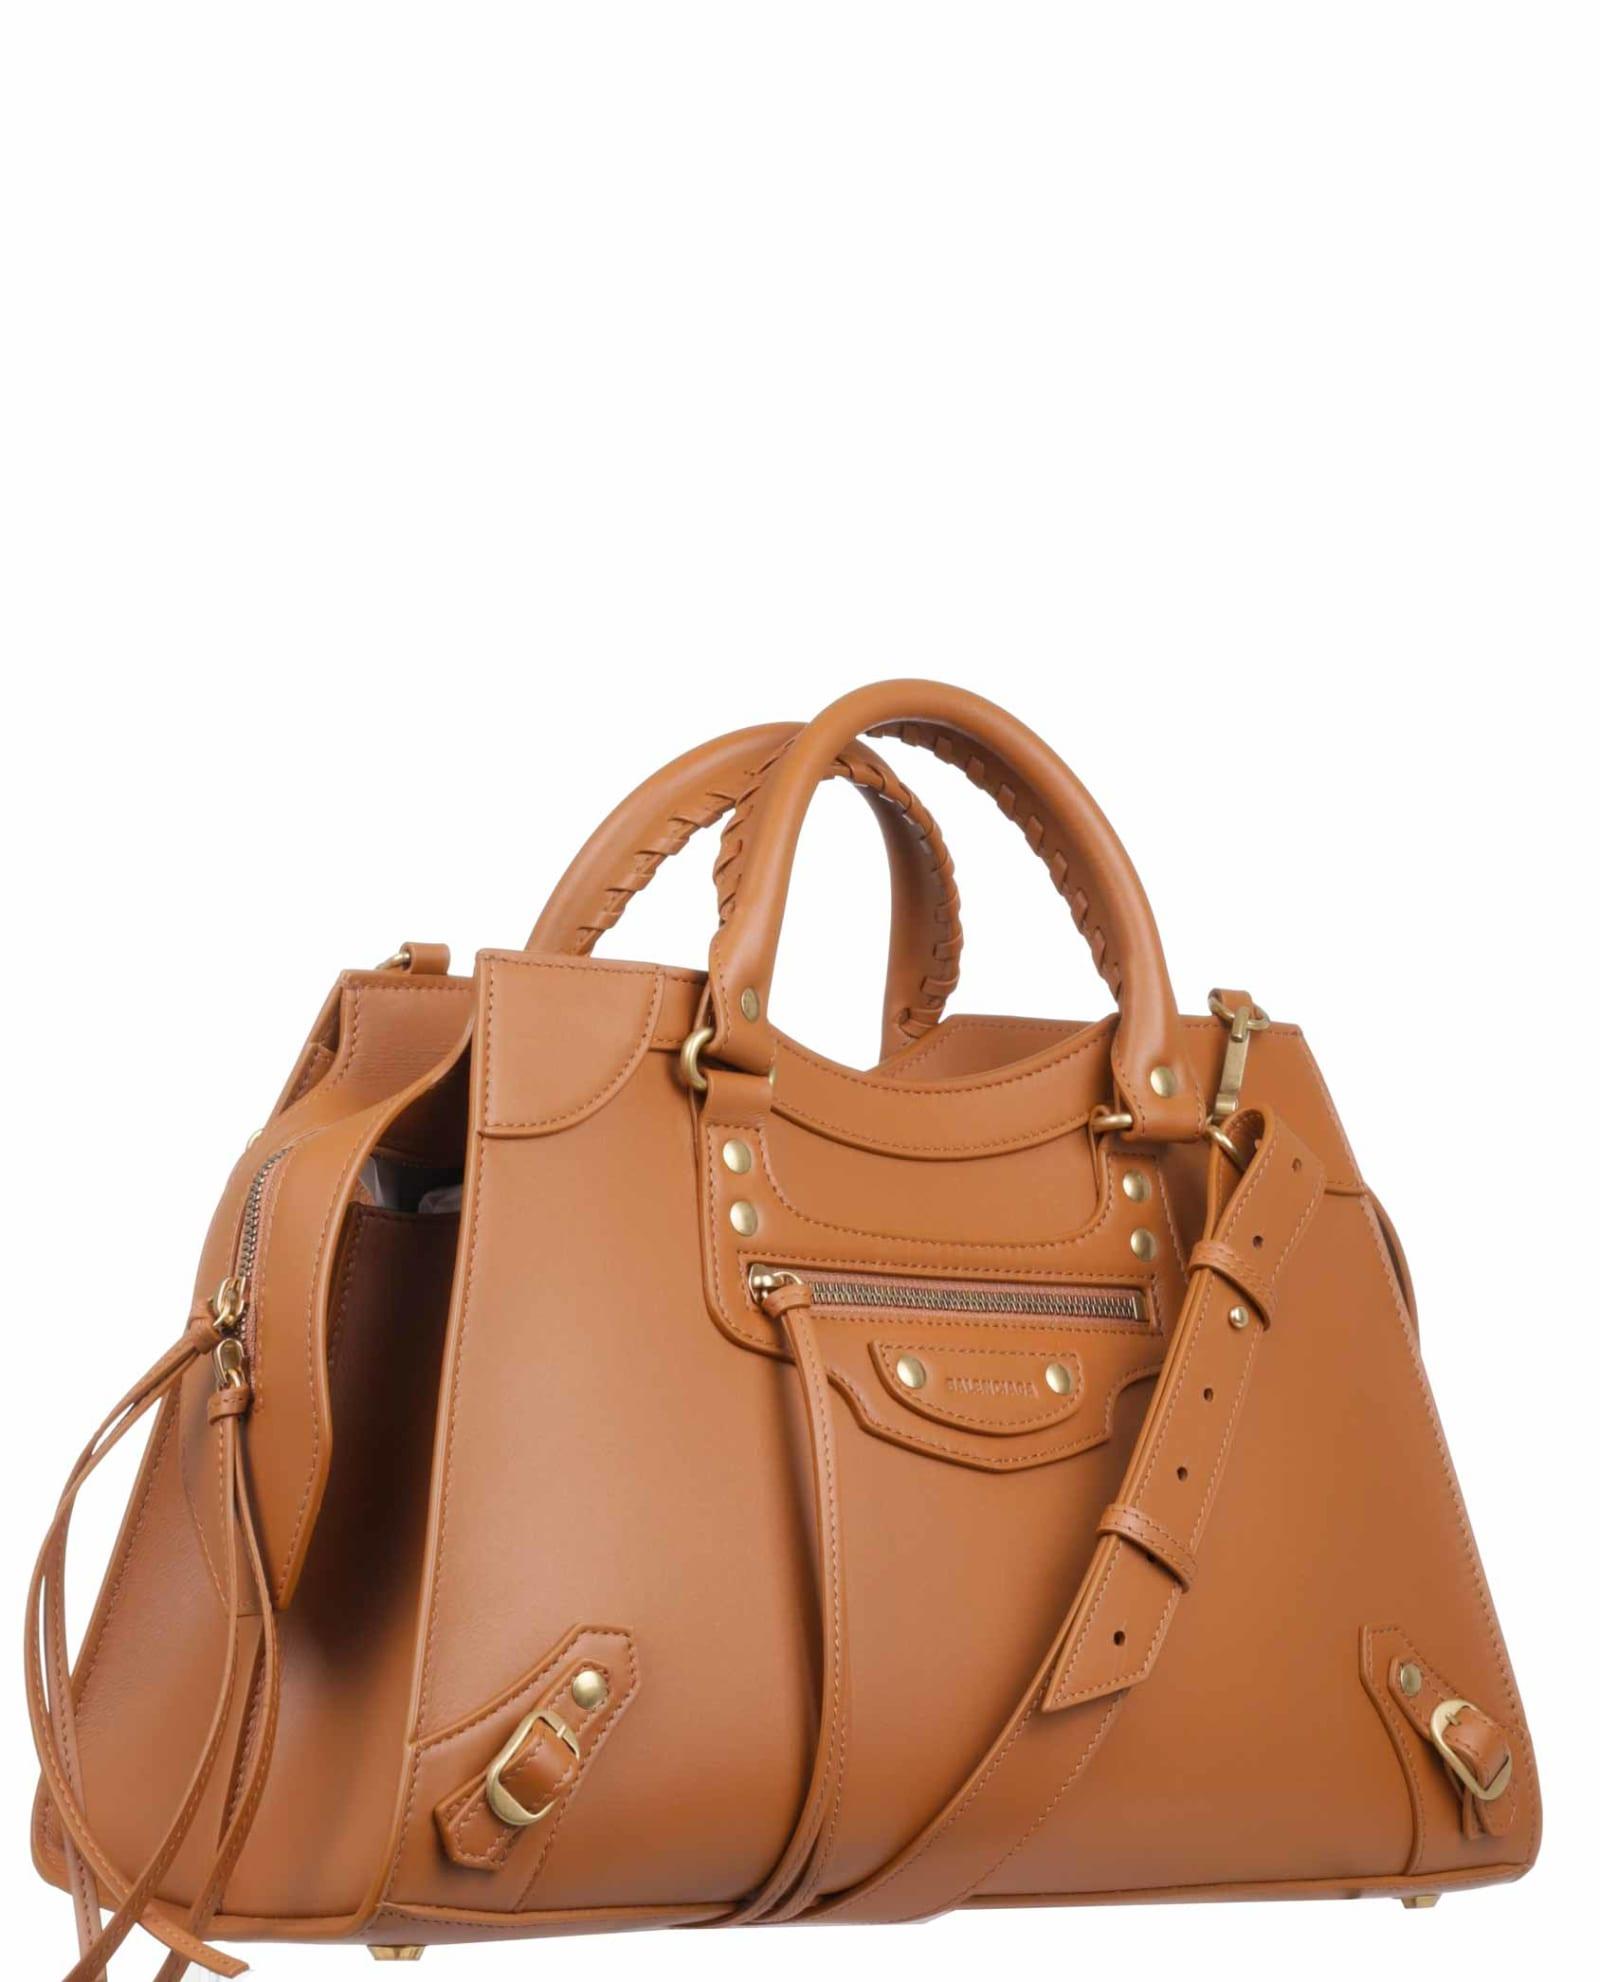 Balenciaga Leather City Bag Brown